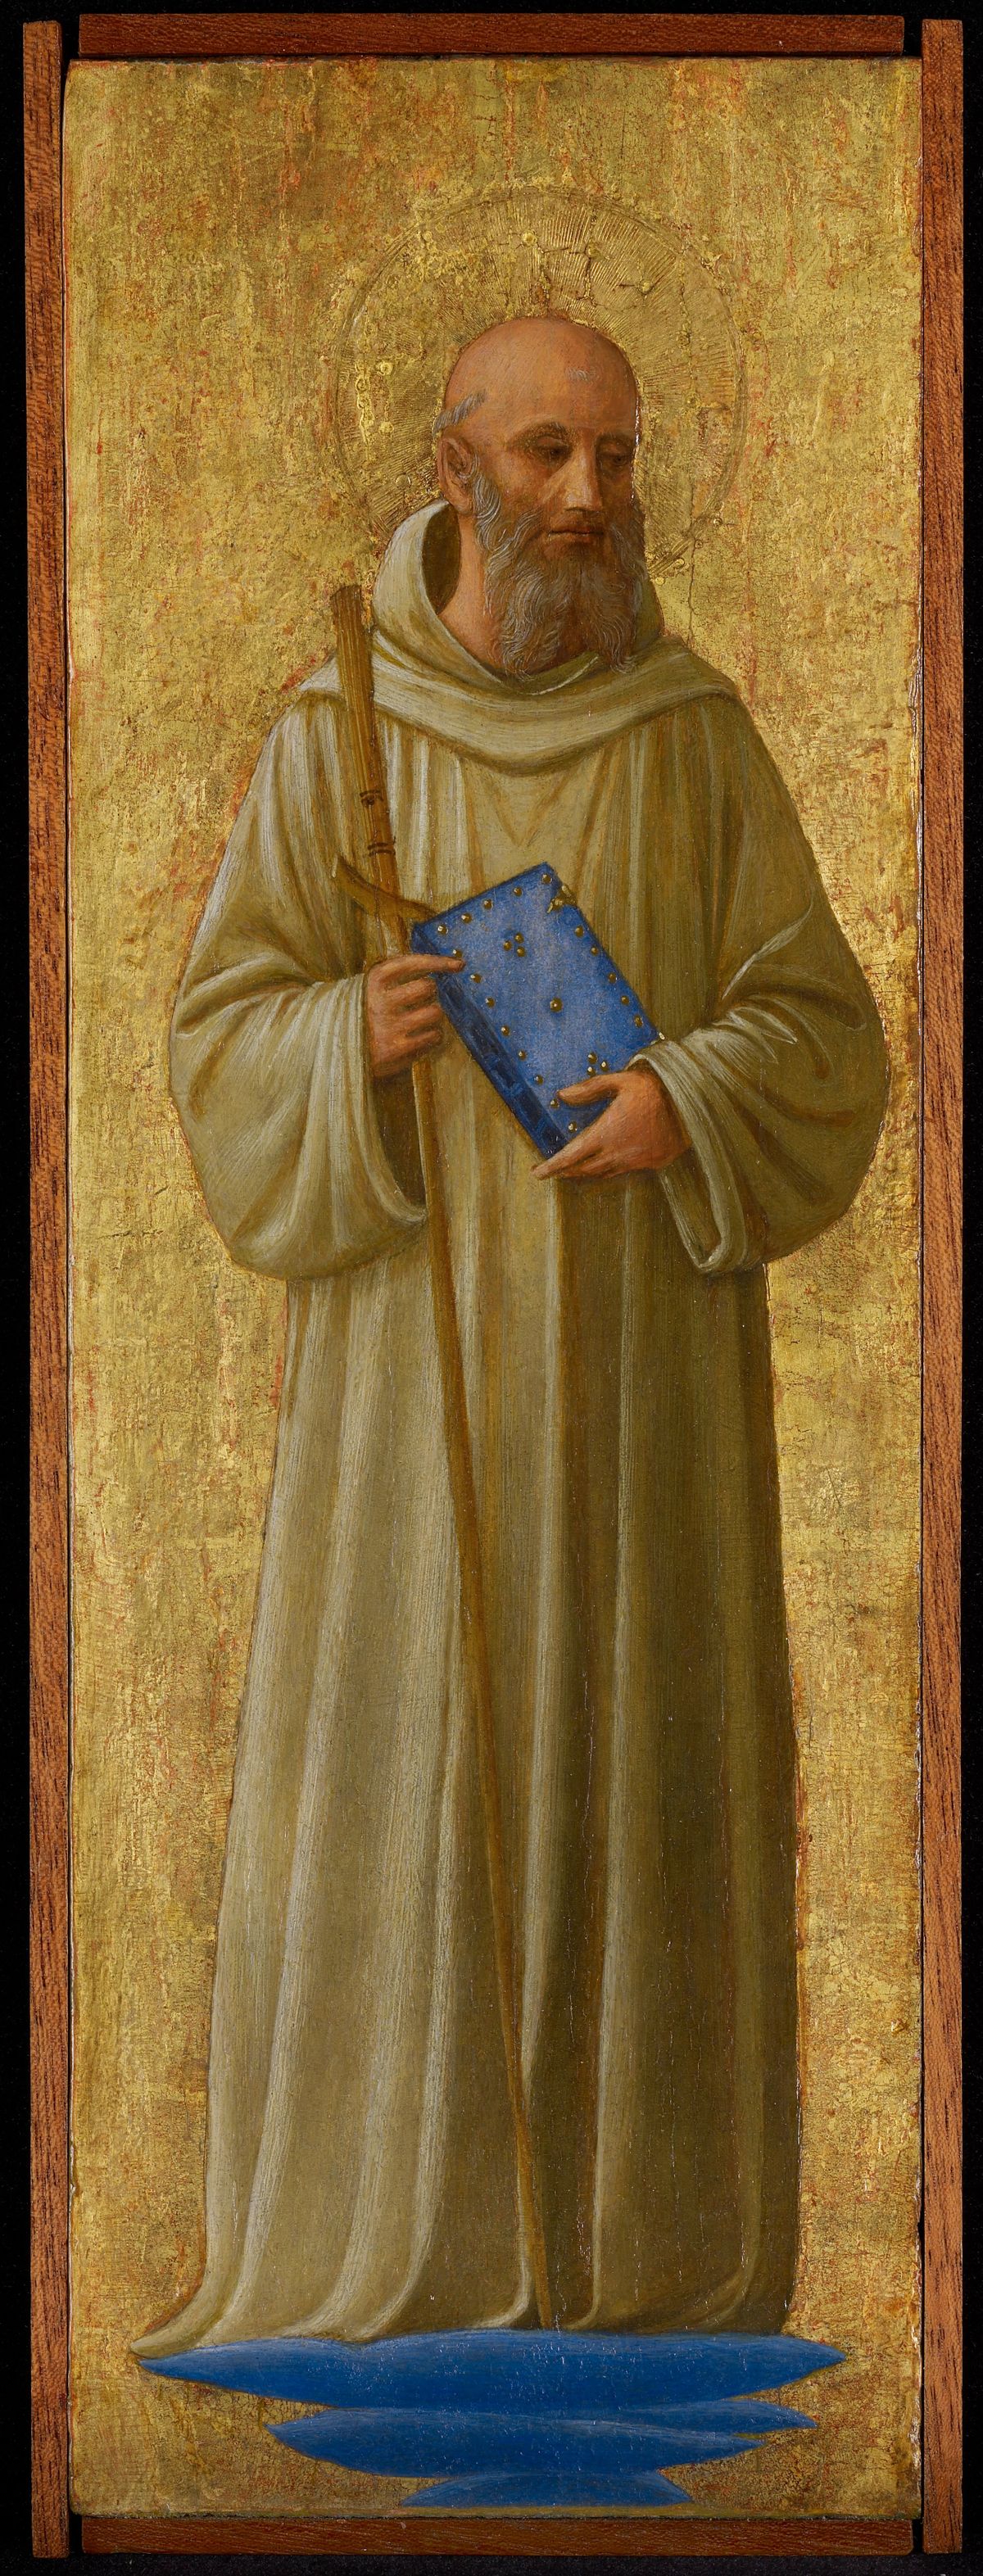 Saint Romuald by Fra Angelico (1440) - Public Domain Catholic Painting